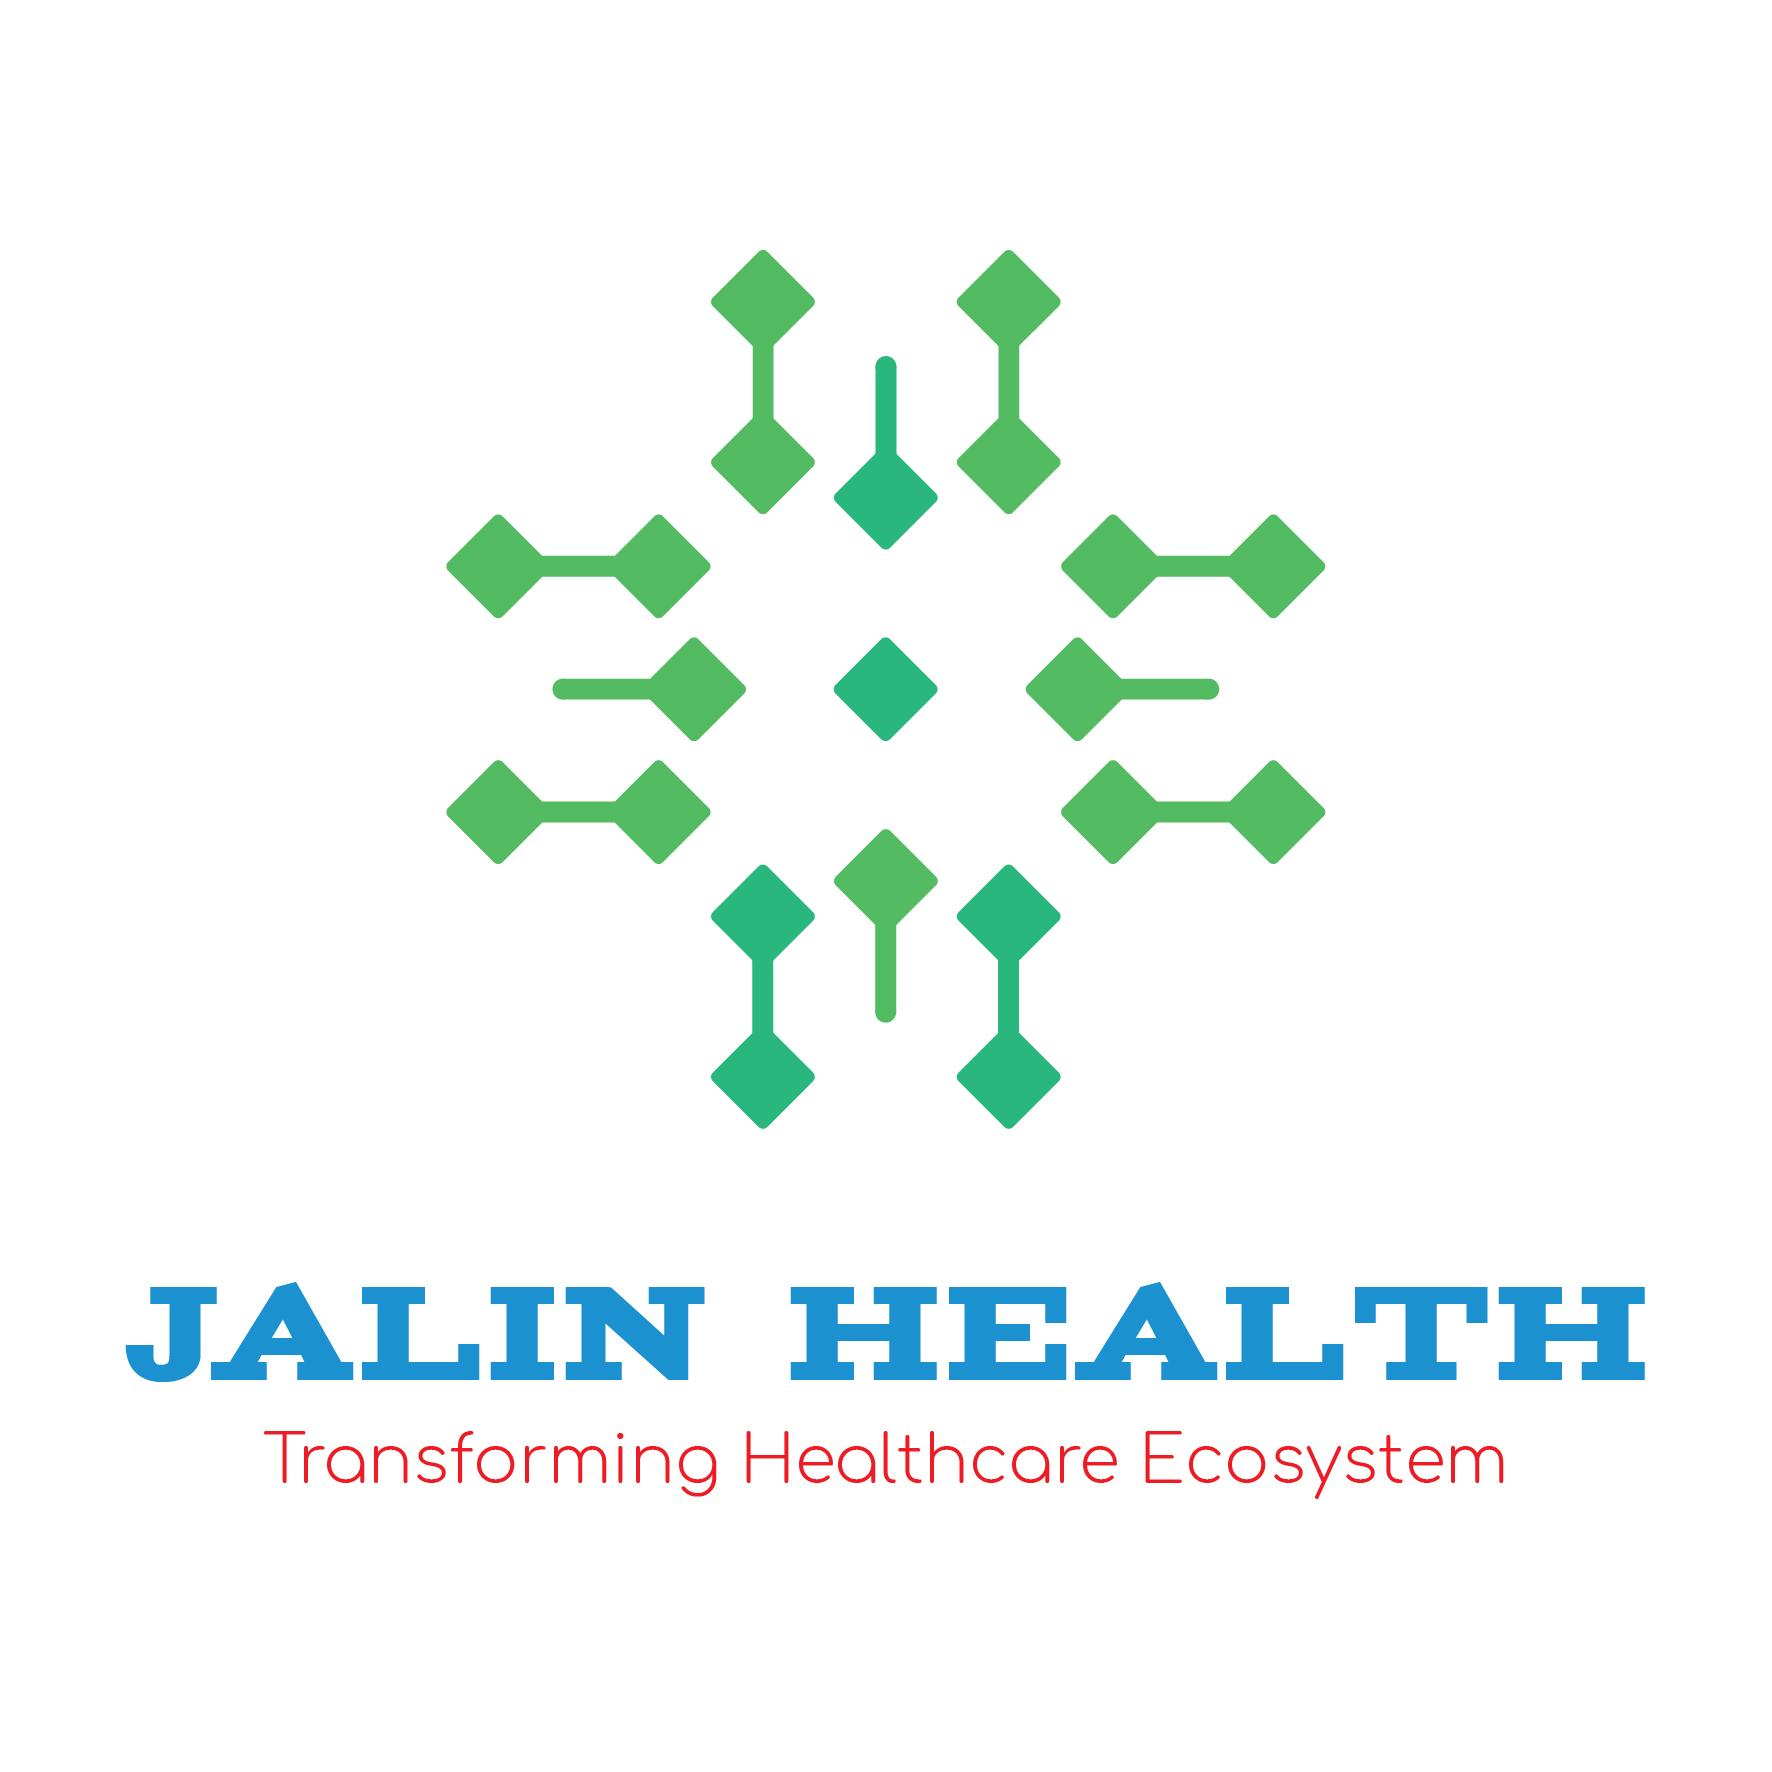 Jalin Health